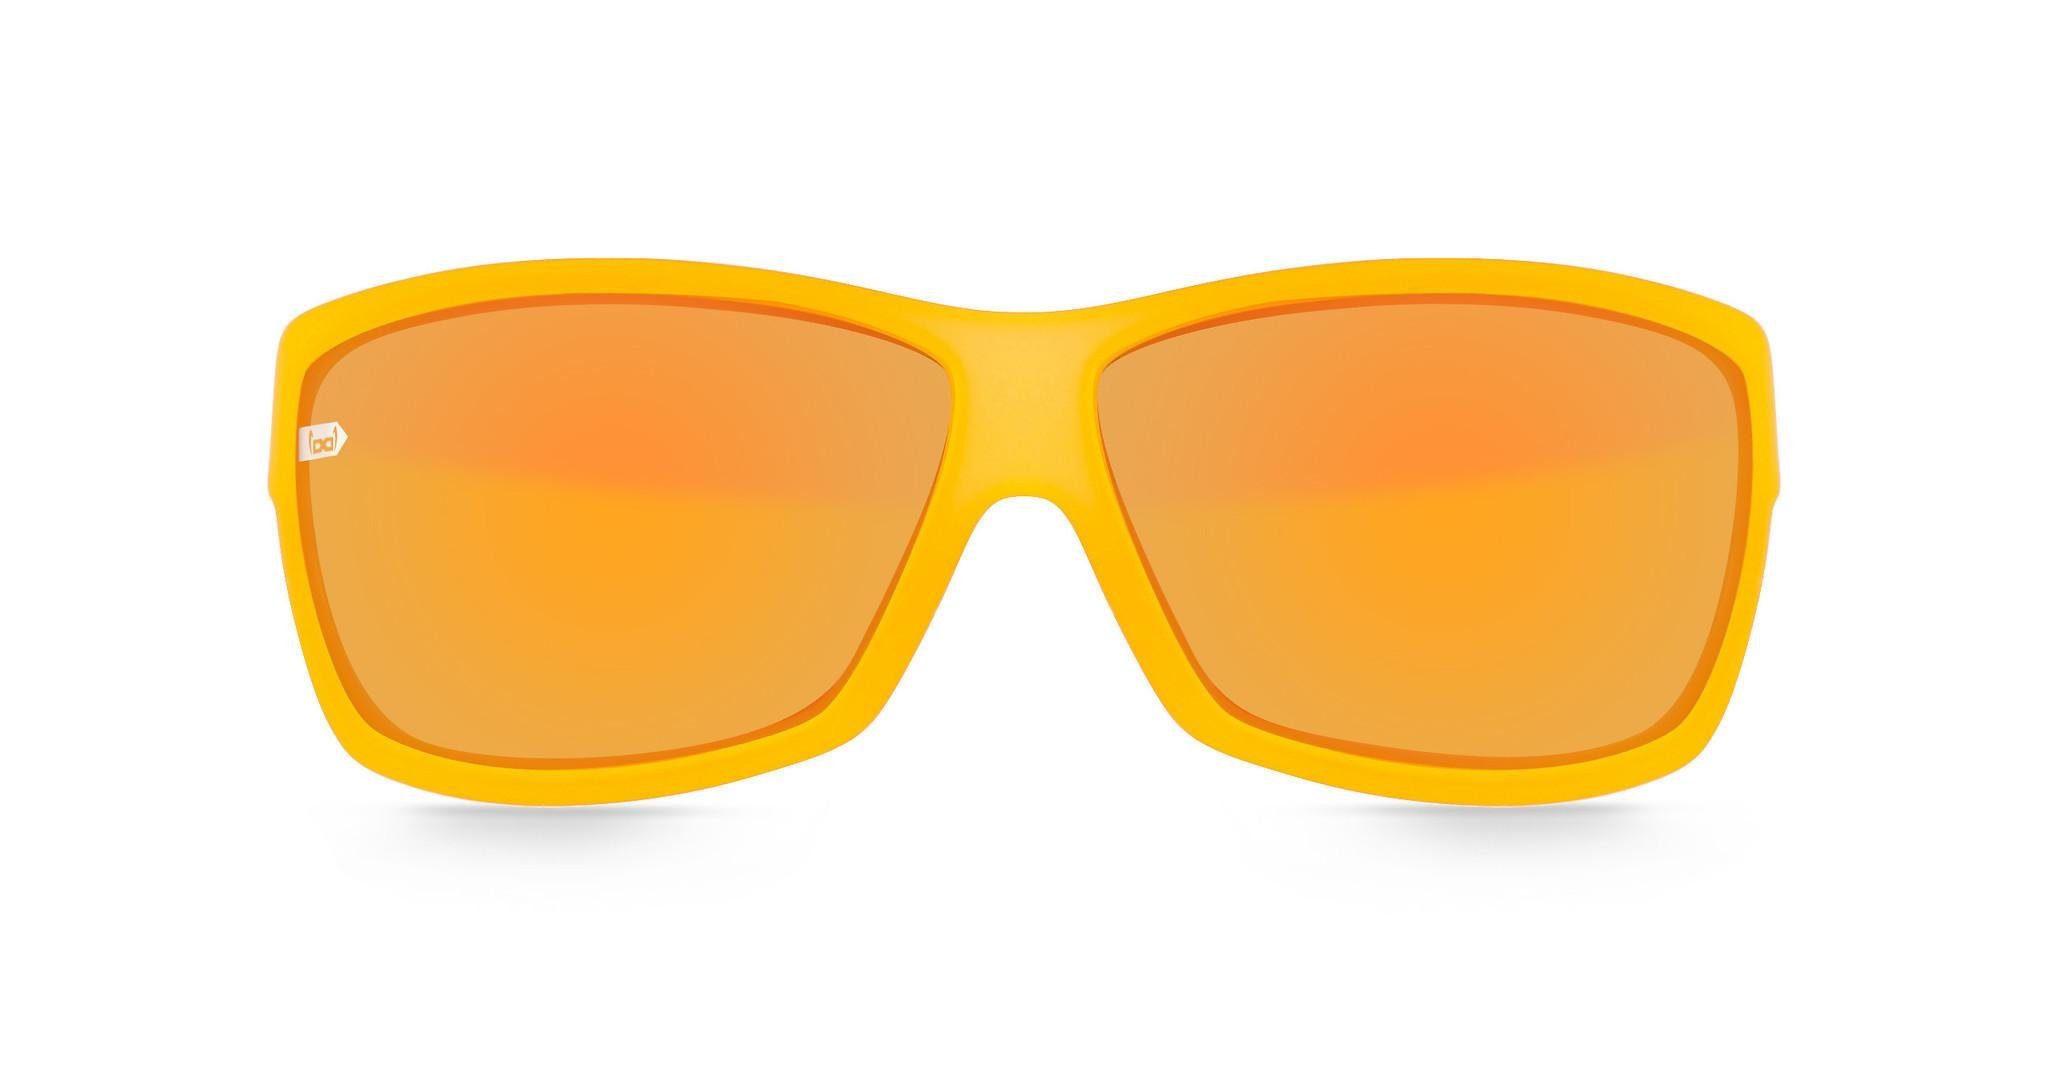 Sonnenbrille gelb gloryfy G13